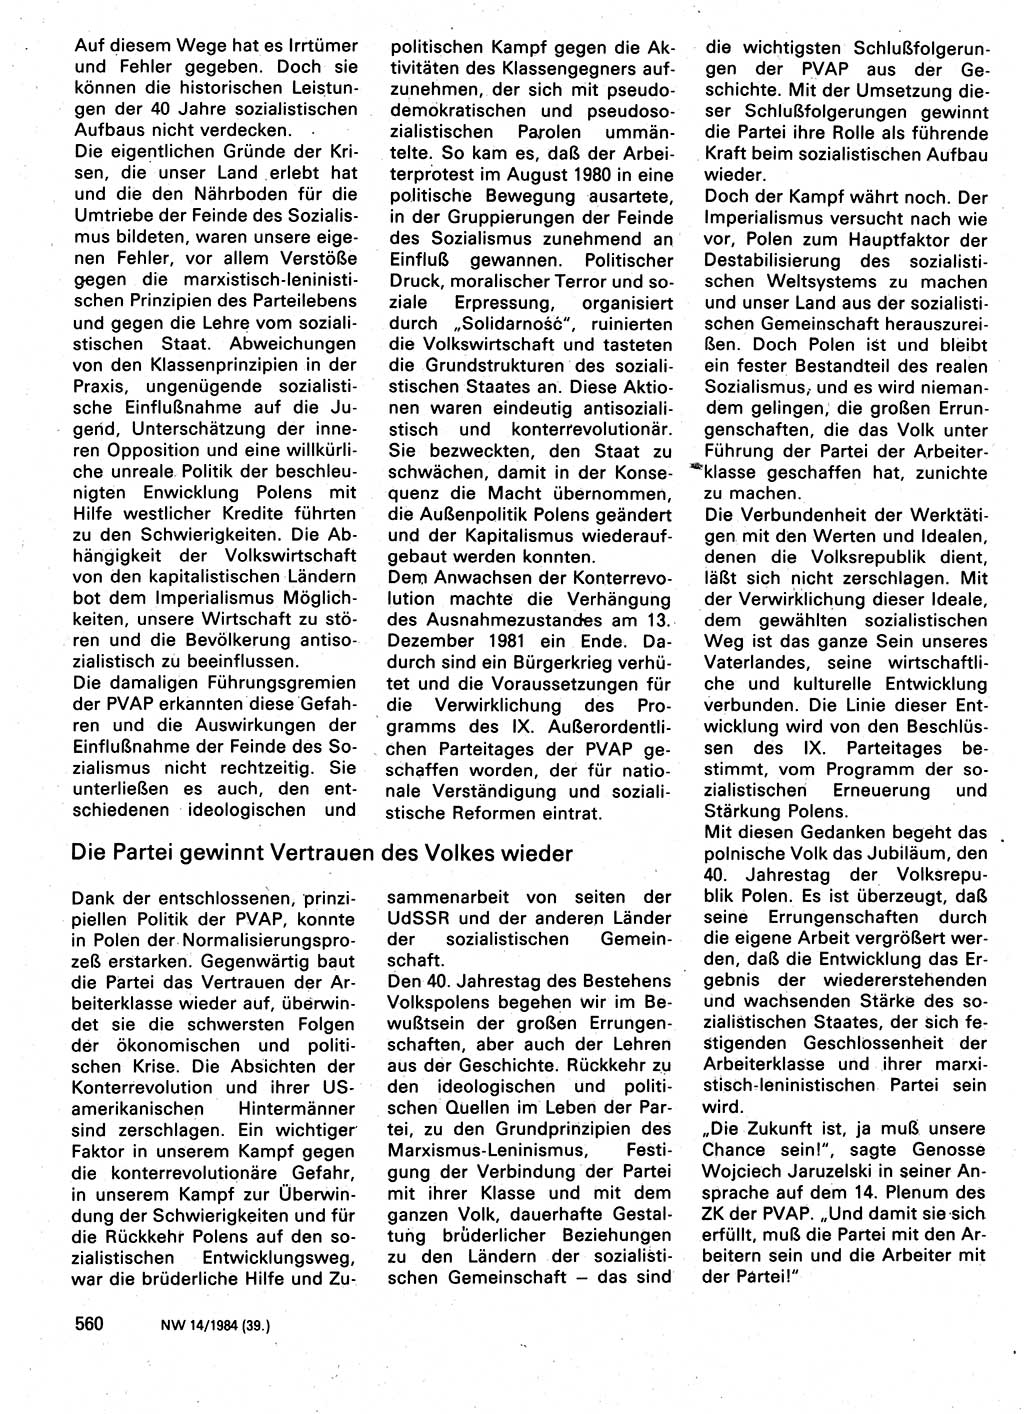 Neuer Weg (NW), Organ des Zentralkomitees (ZK) der SED (Sozialistische Einheitspartei Deutschlands) für Fragen des Parteilebens, 39. Jahrgang [Deutsche Demokratische Republik (DDR)] 1984, Seite 560 (NW ZK SED DDR 1984, S. 560)